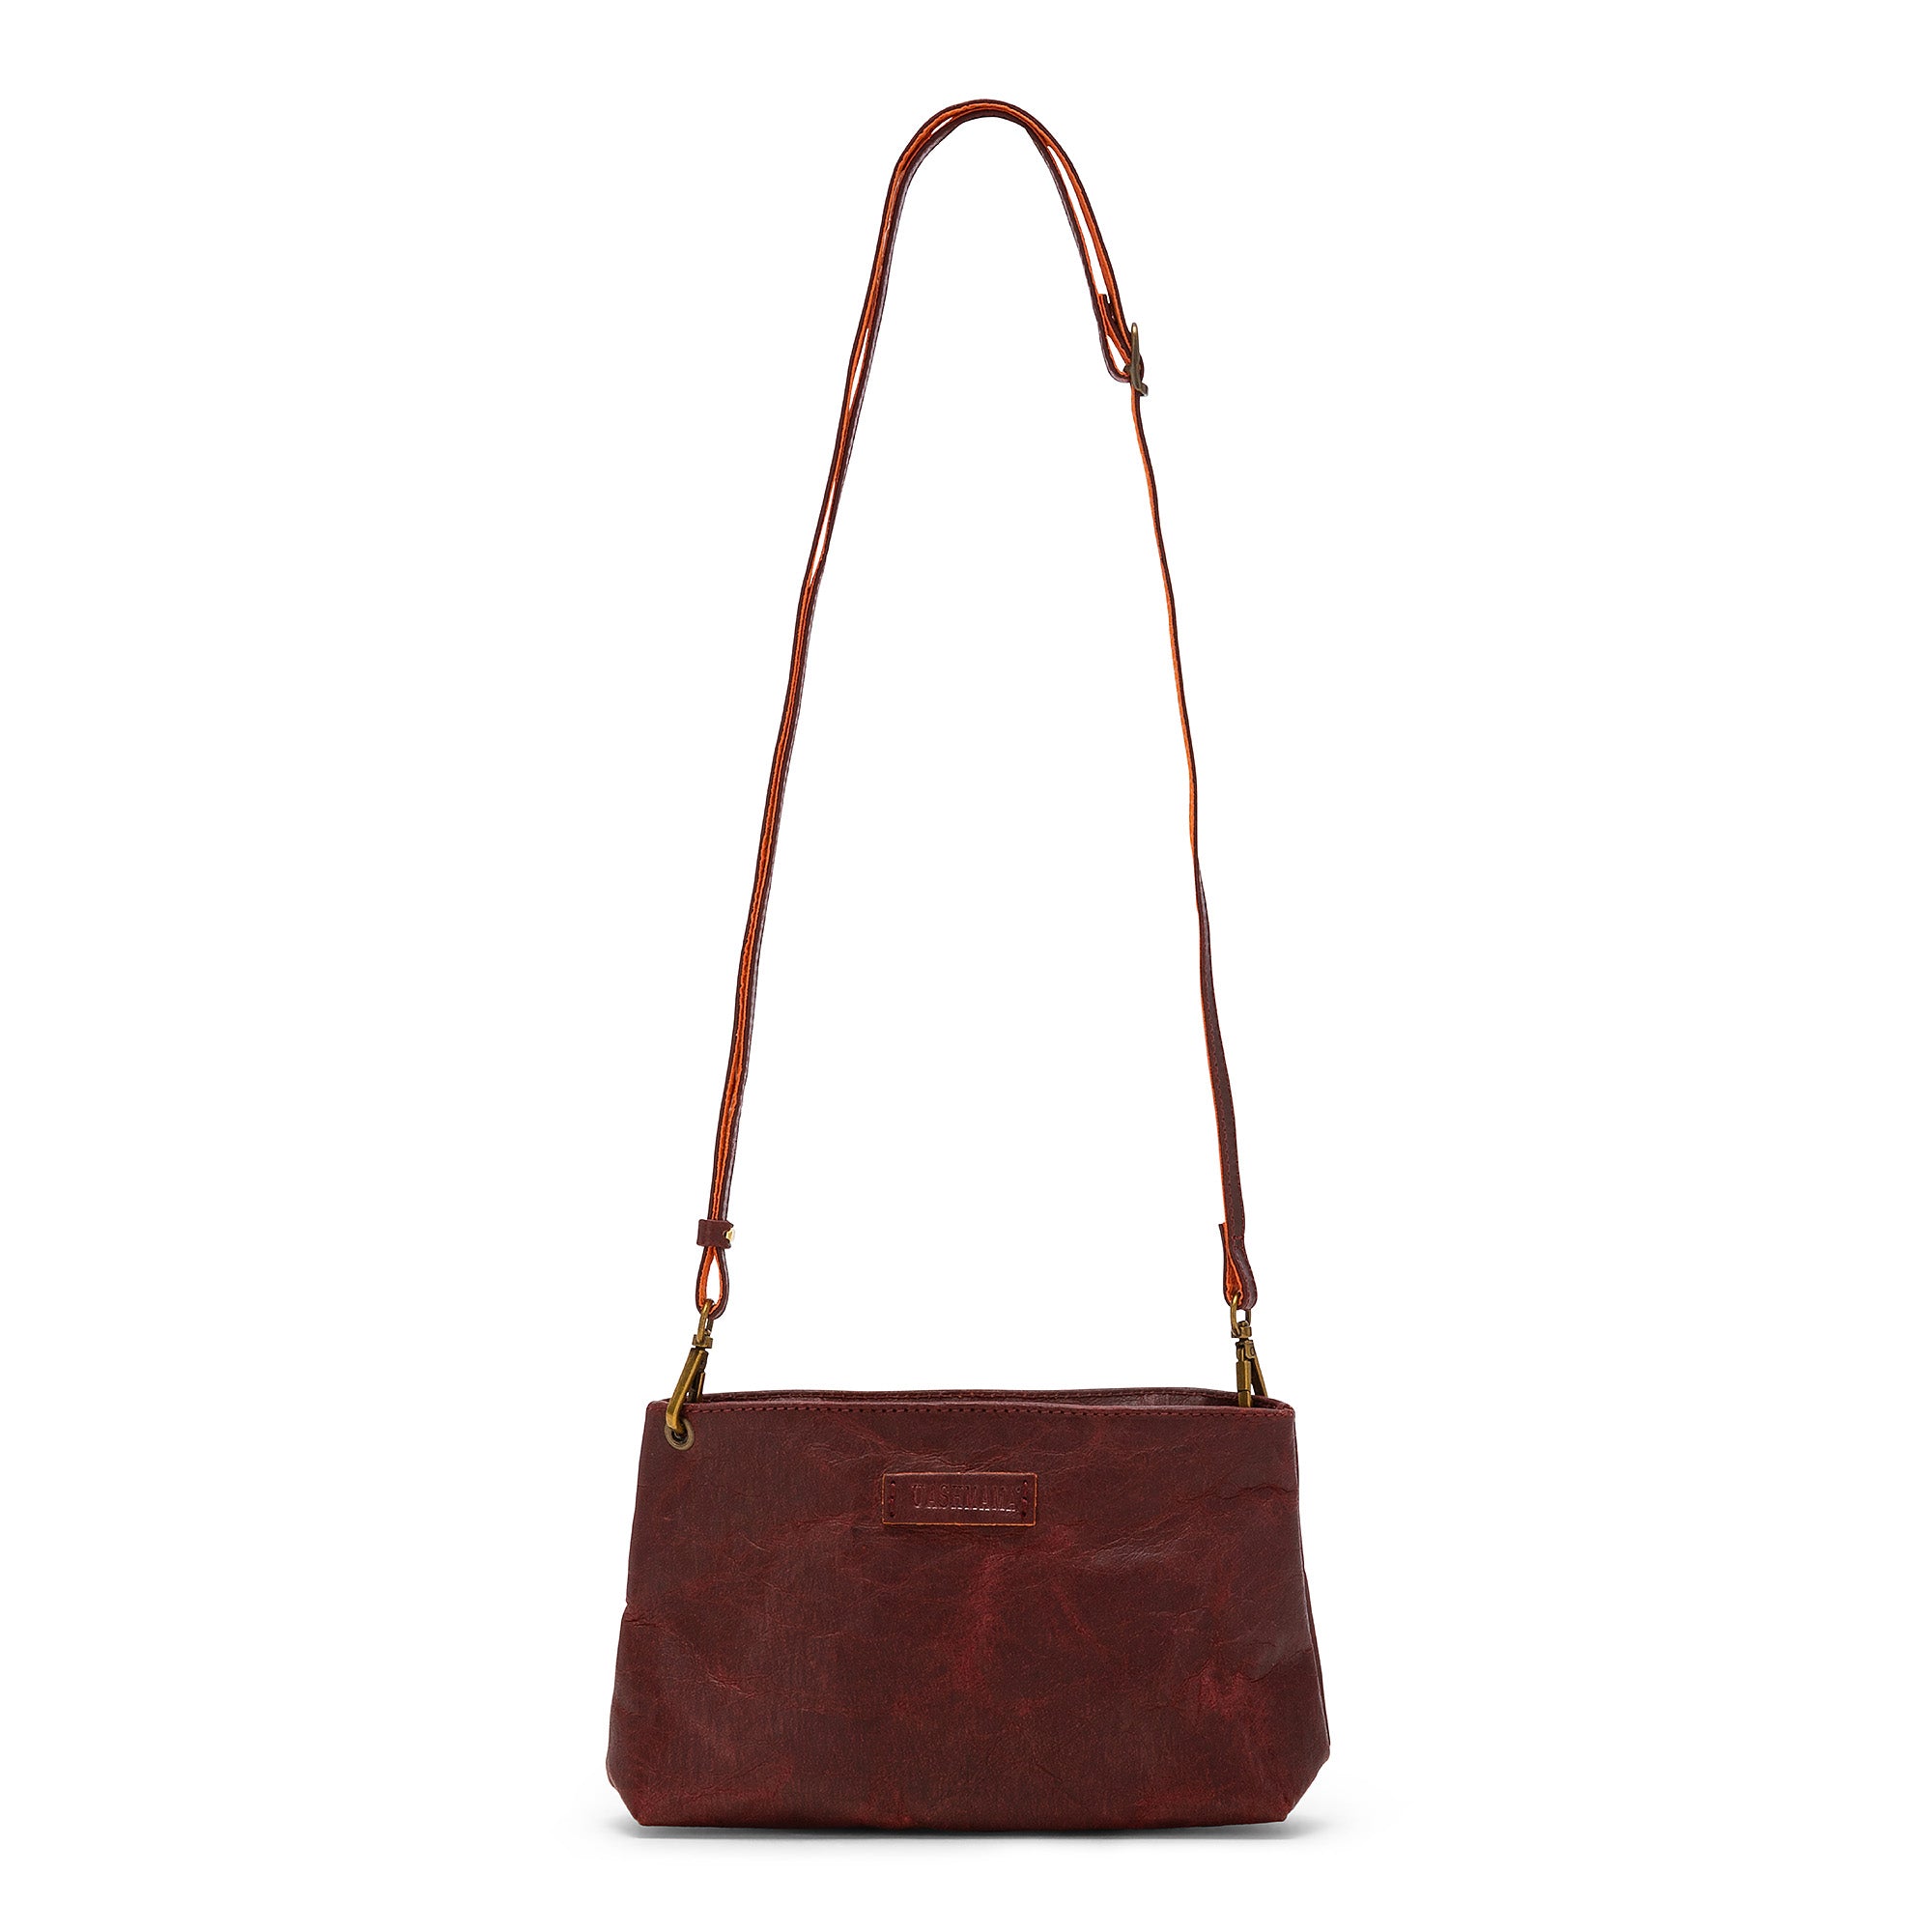 Uashmama Fashionable Crossbody or Clutch Handbag | Vegan, Glossy Black